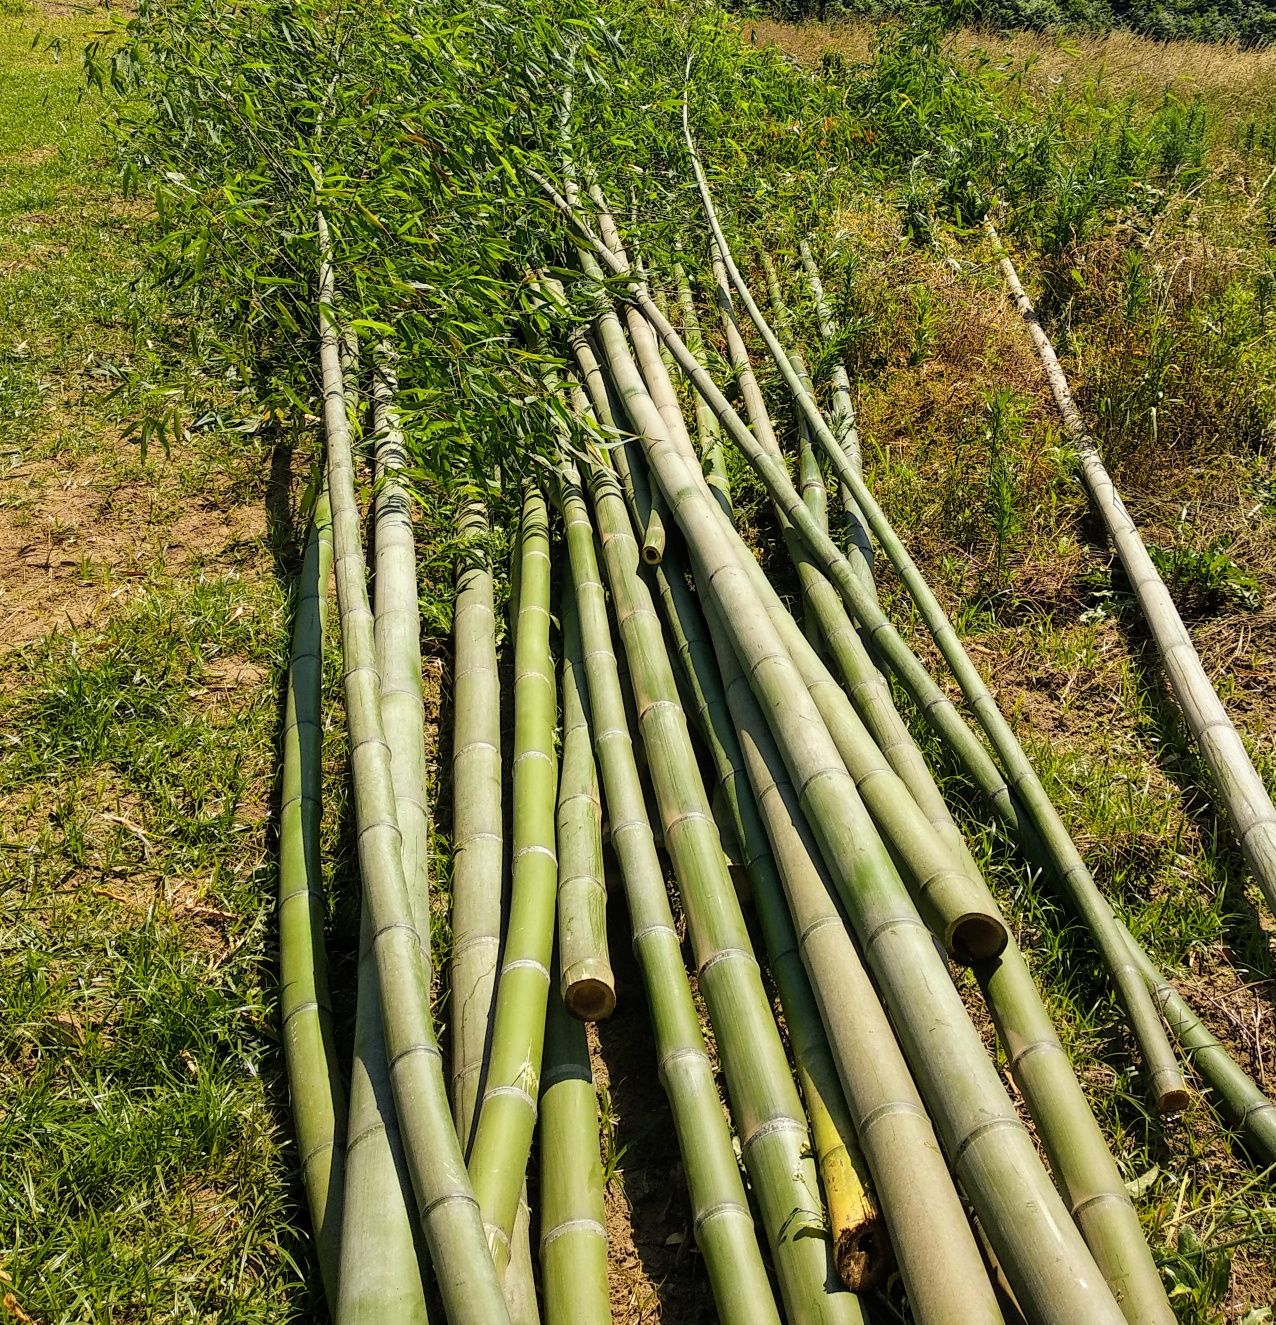 Canas de Bamboo ou Raízes em Vaso - Bambu c todos tamanhos ou alturas